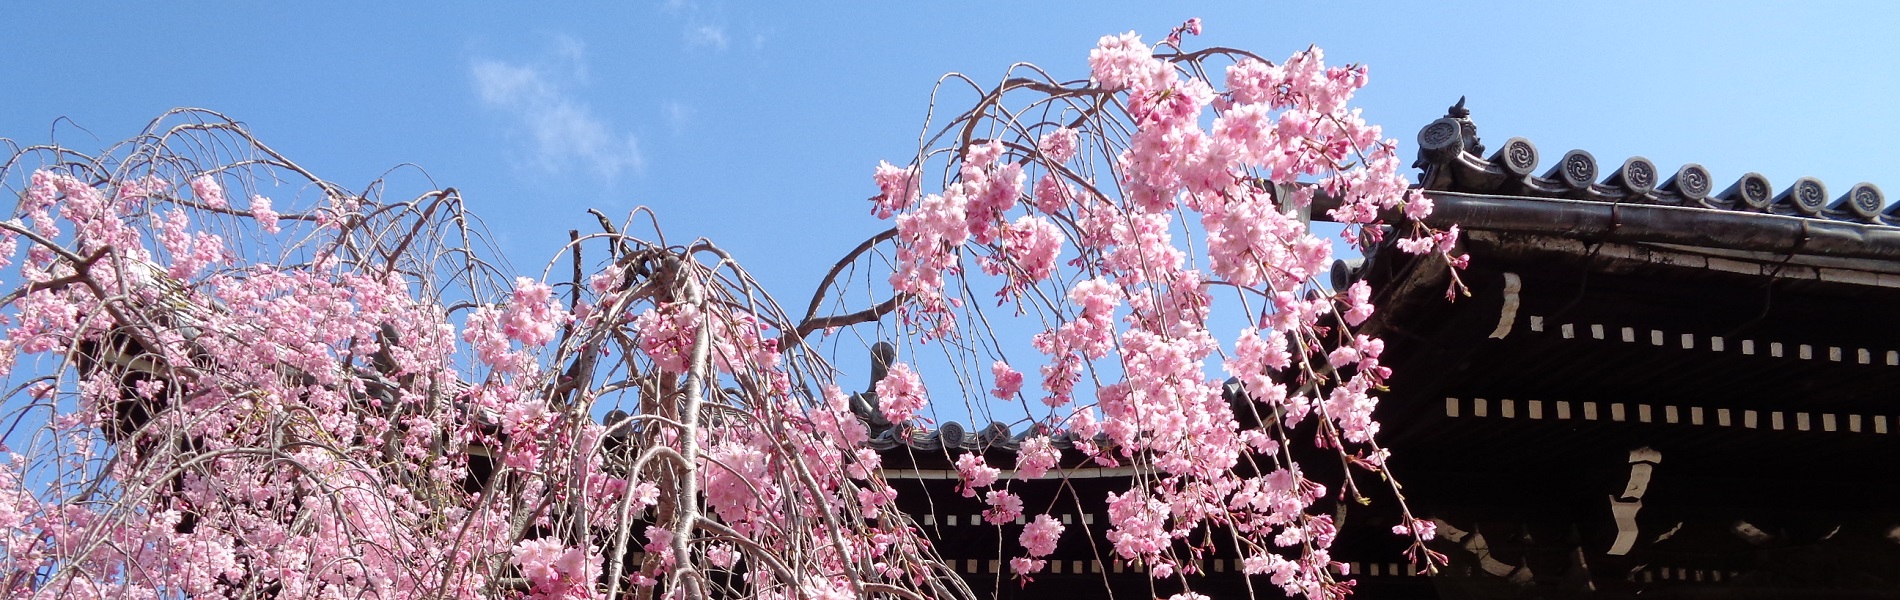 サイト京つねひごろのトップイメージ画像。京都立本寺に咲くしだれ桜。